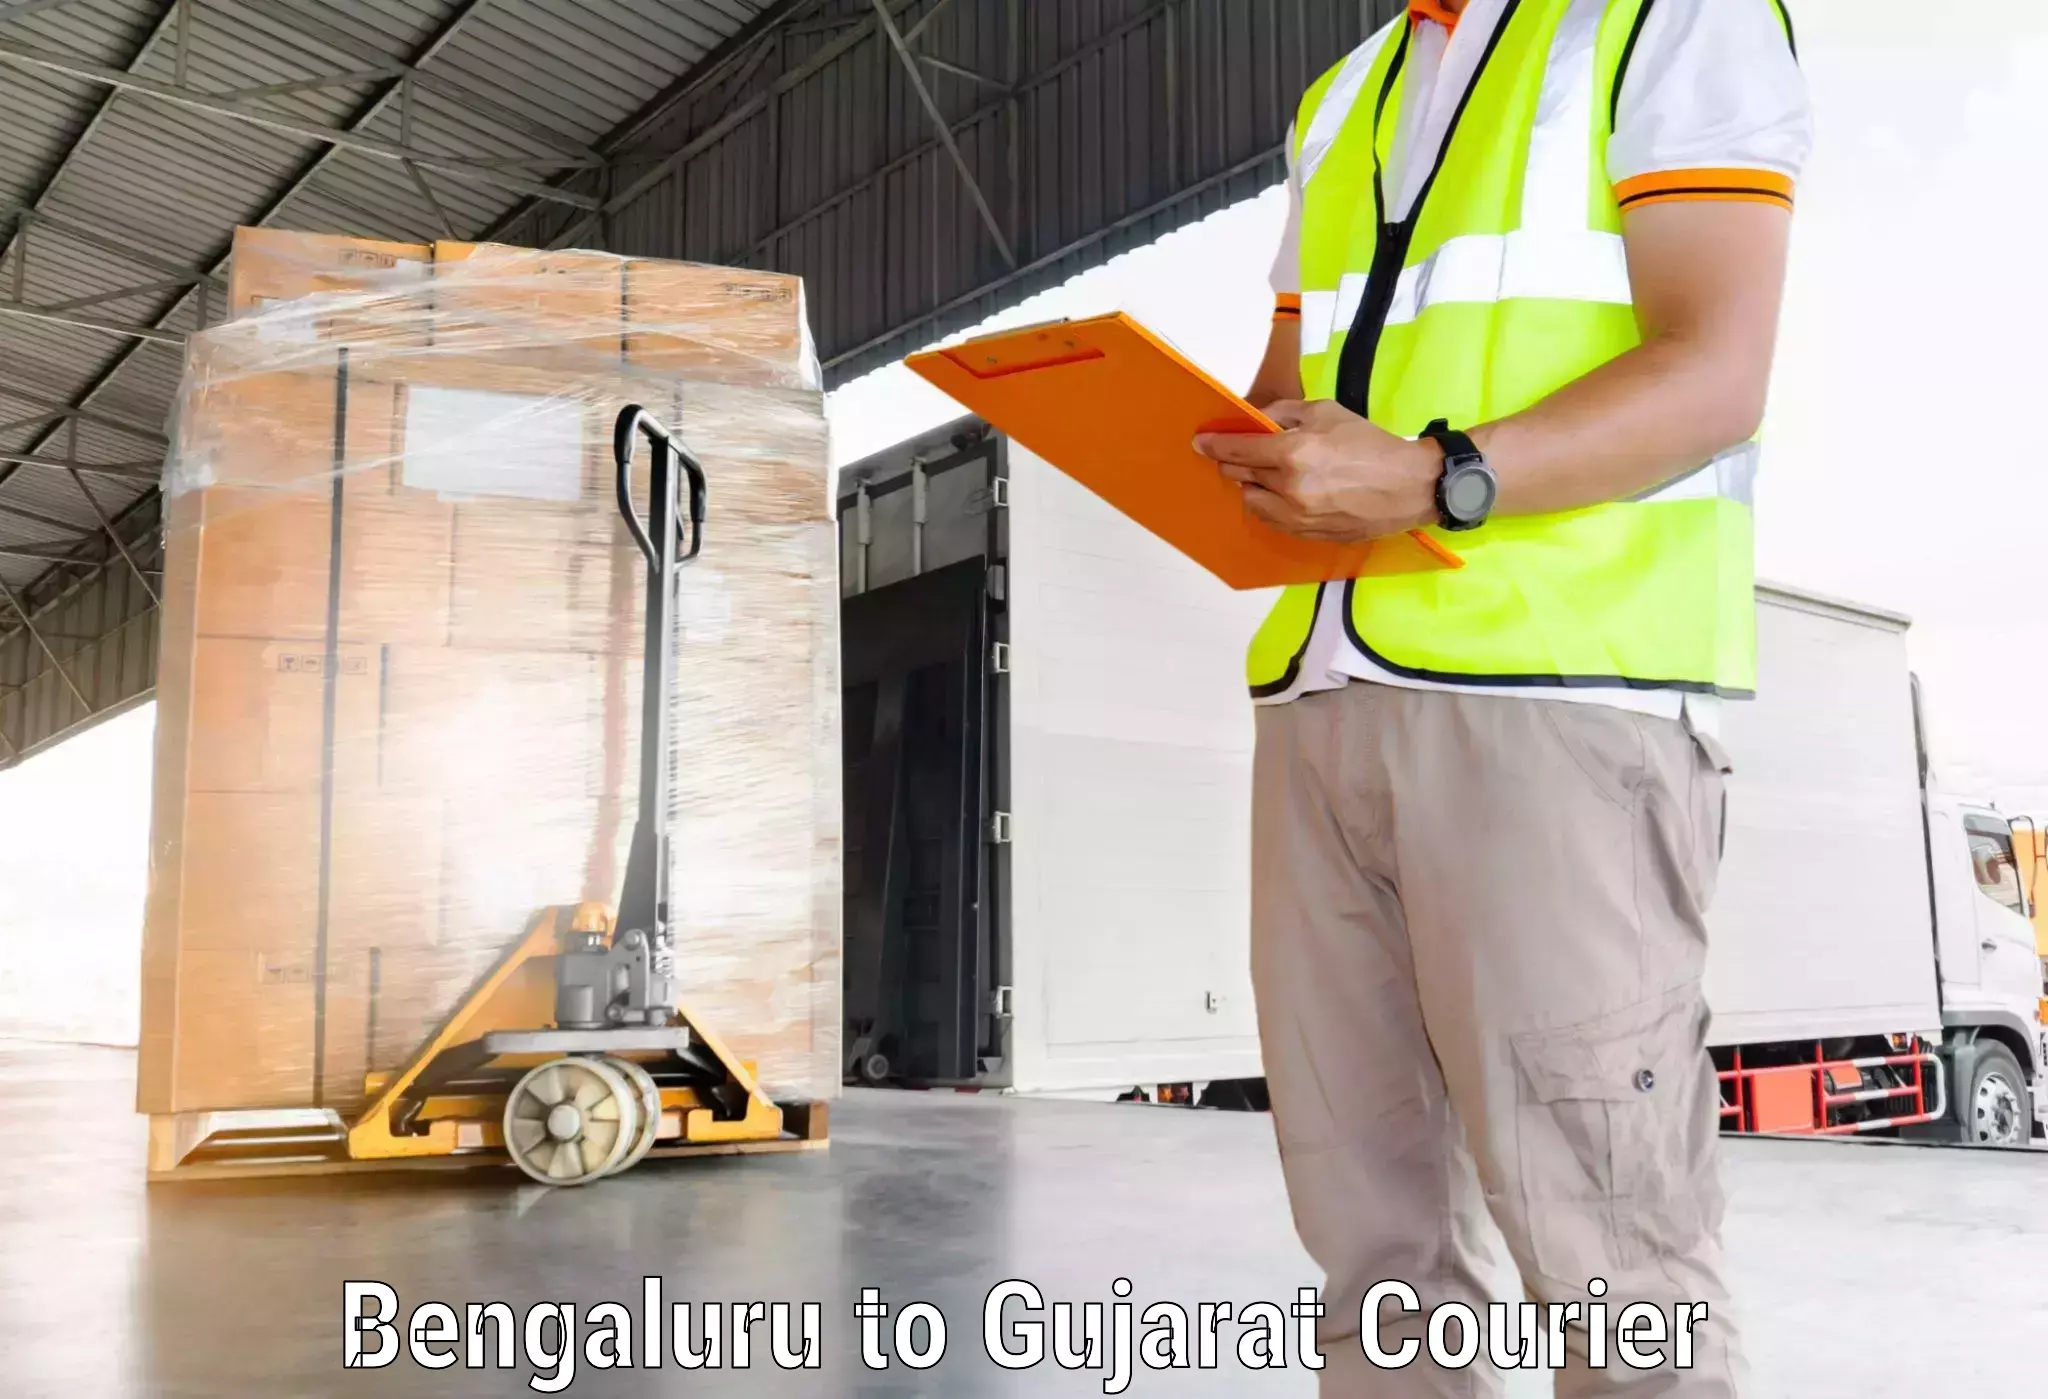 On-demand shipping options Bengaluru to IIIT Vadodara